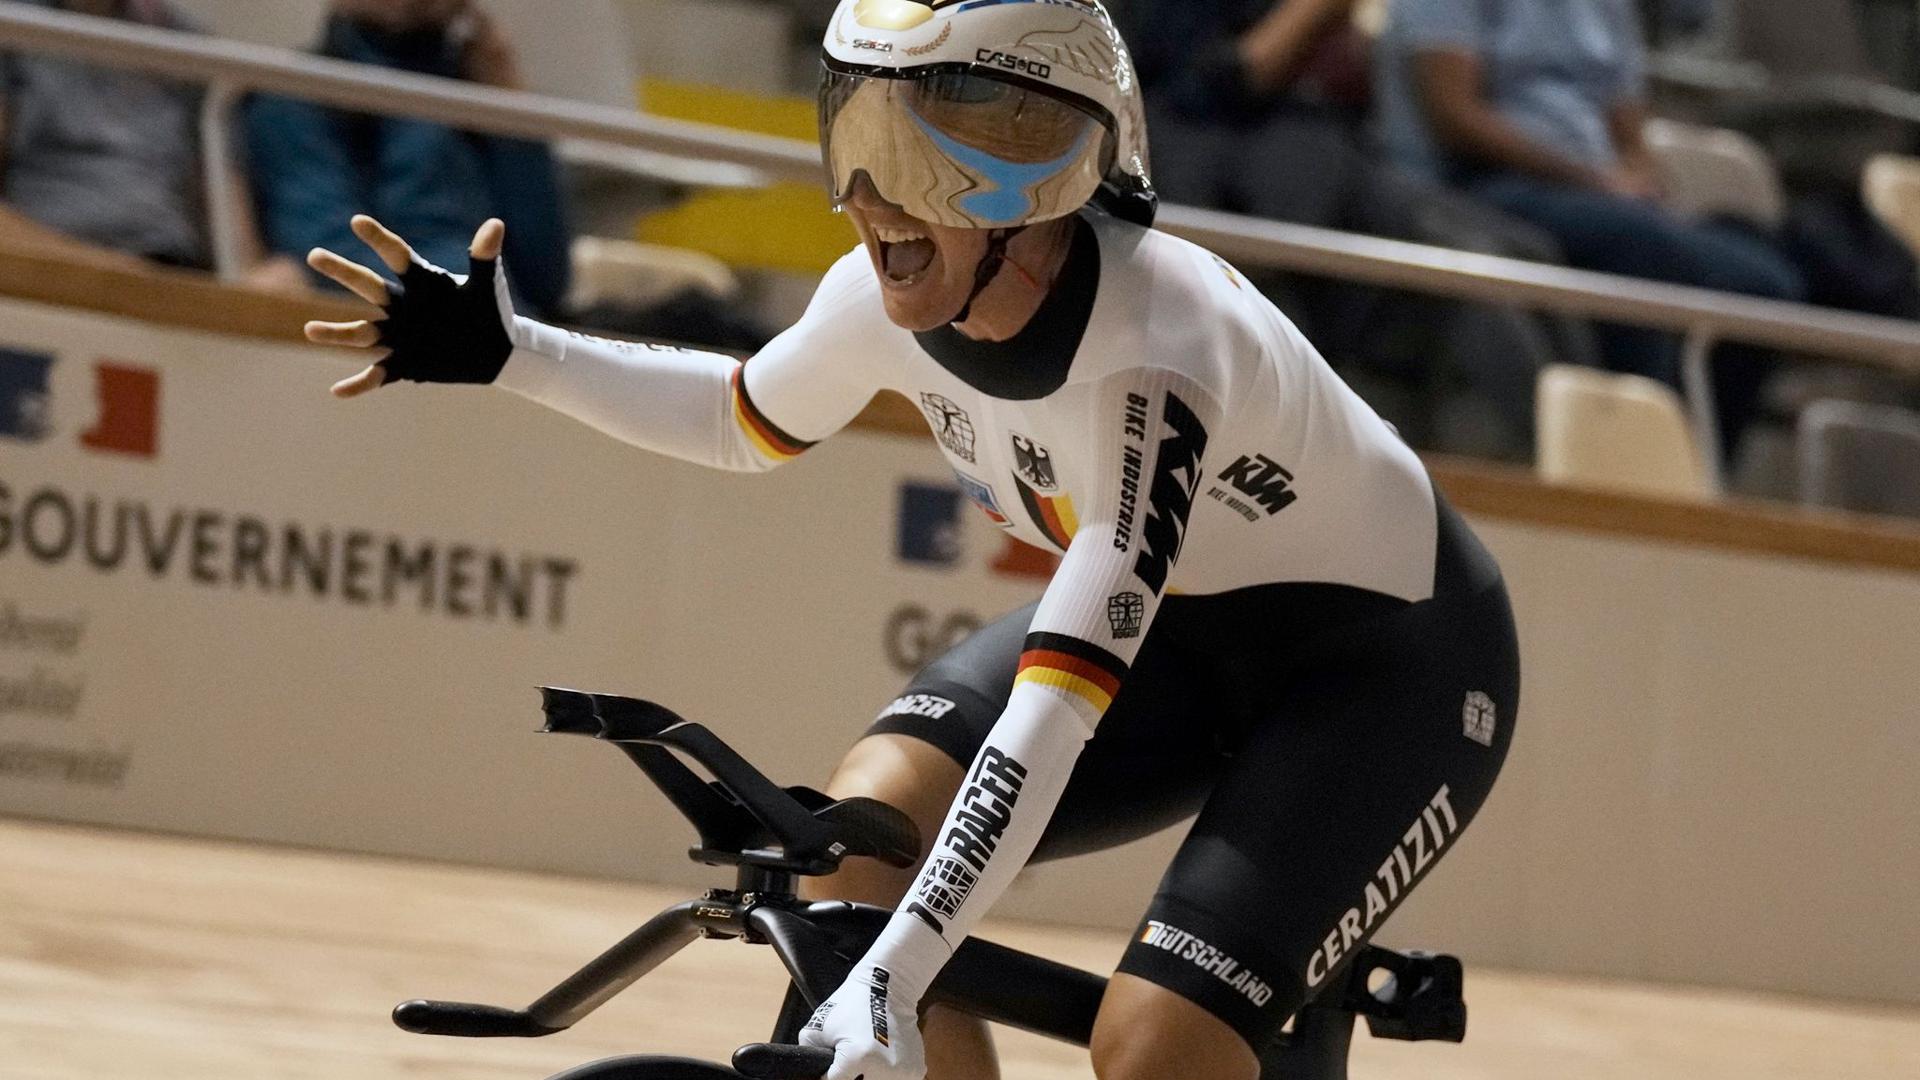 Lisa Brennauer legte im Vélodrome von Roubaix einen deutschen Rekord hin.